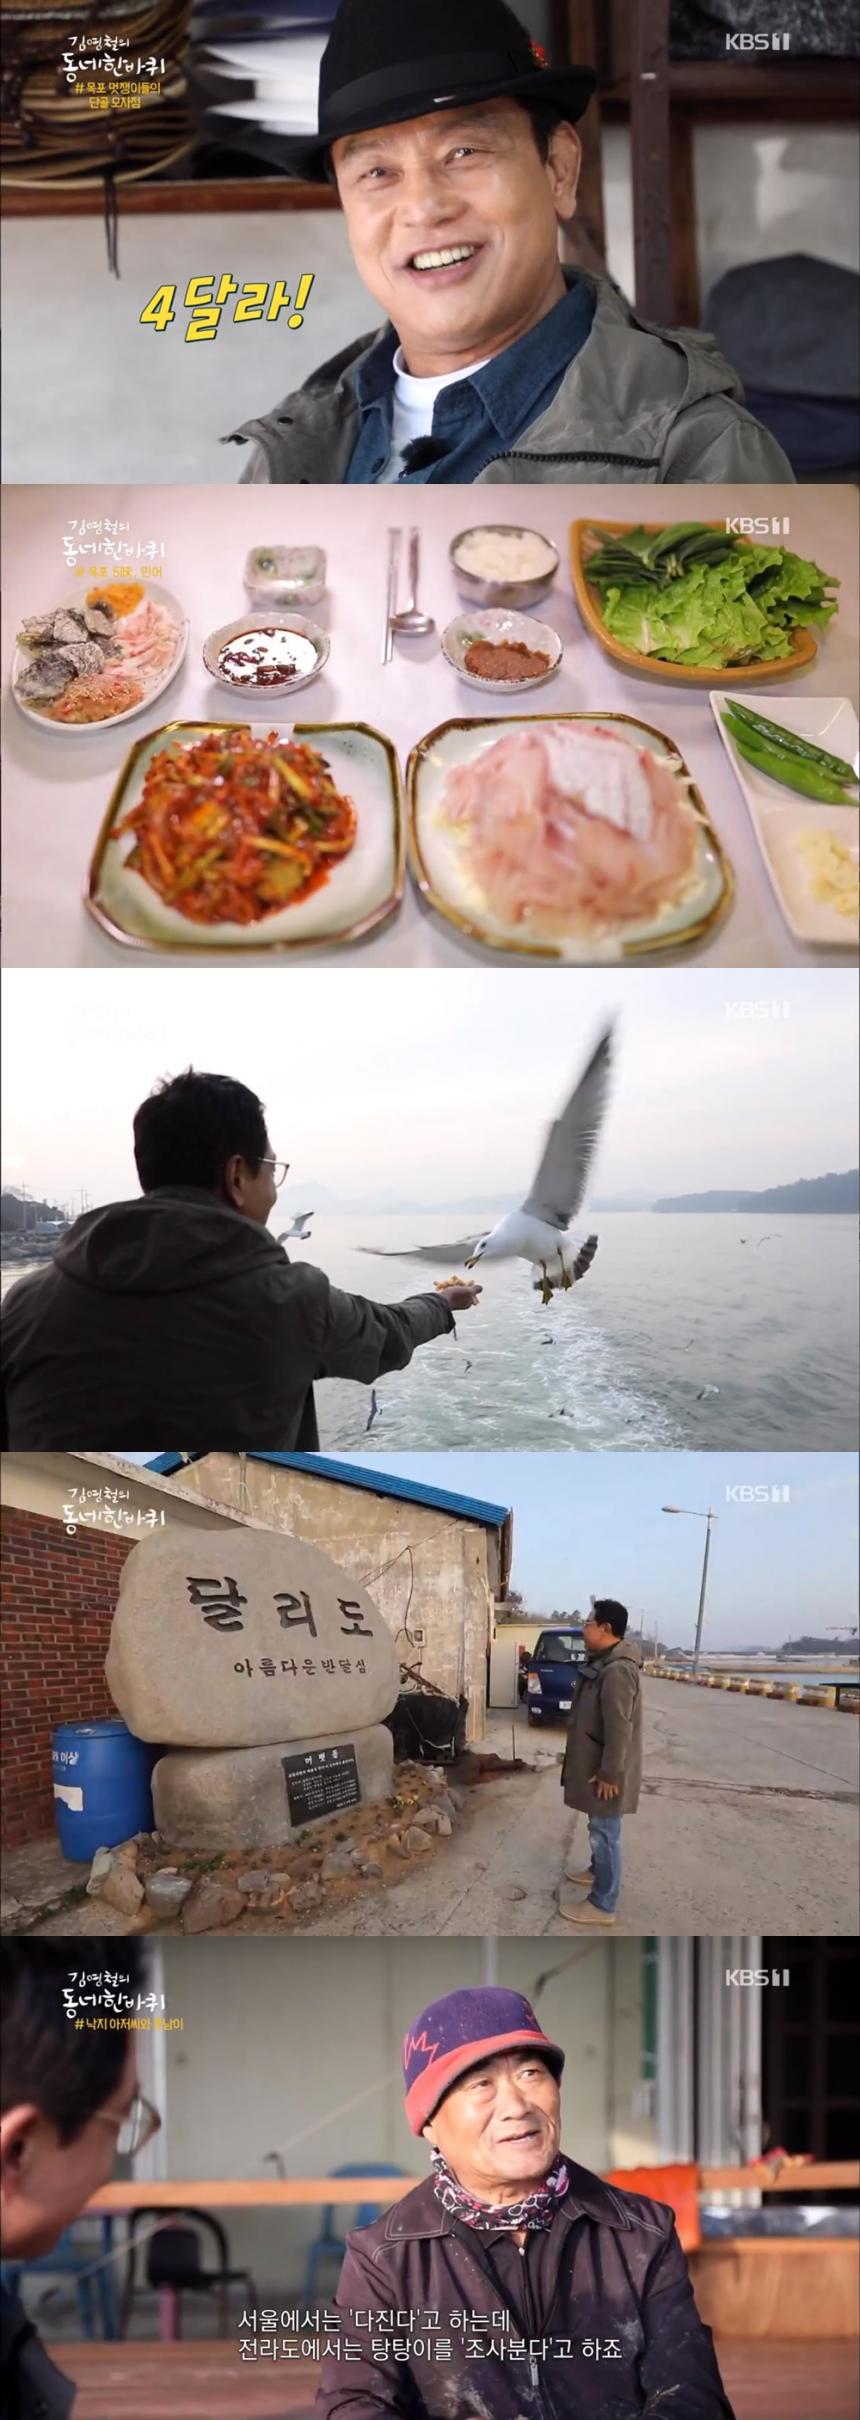 KBS1 '김영철의 동네 한 바퀴' 방송 캡쳐